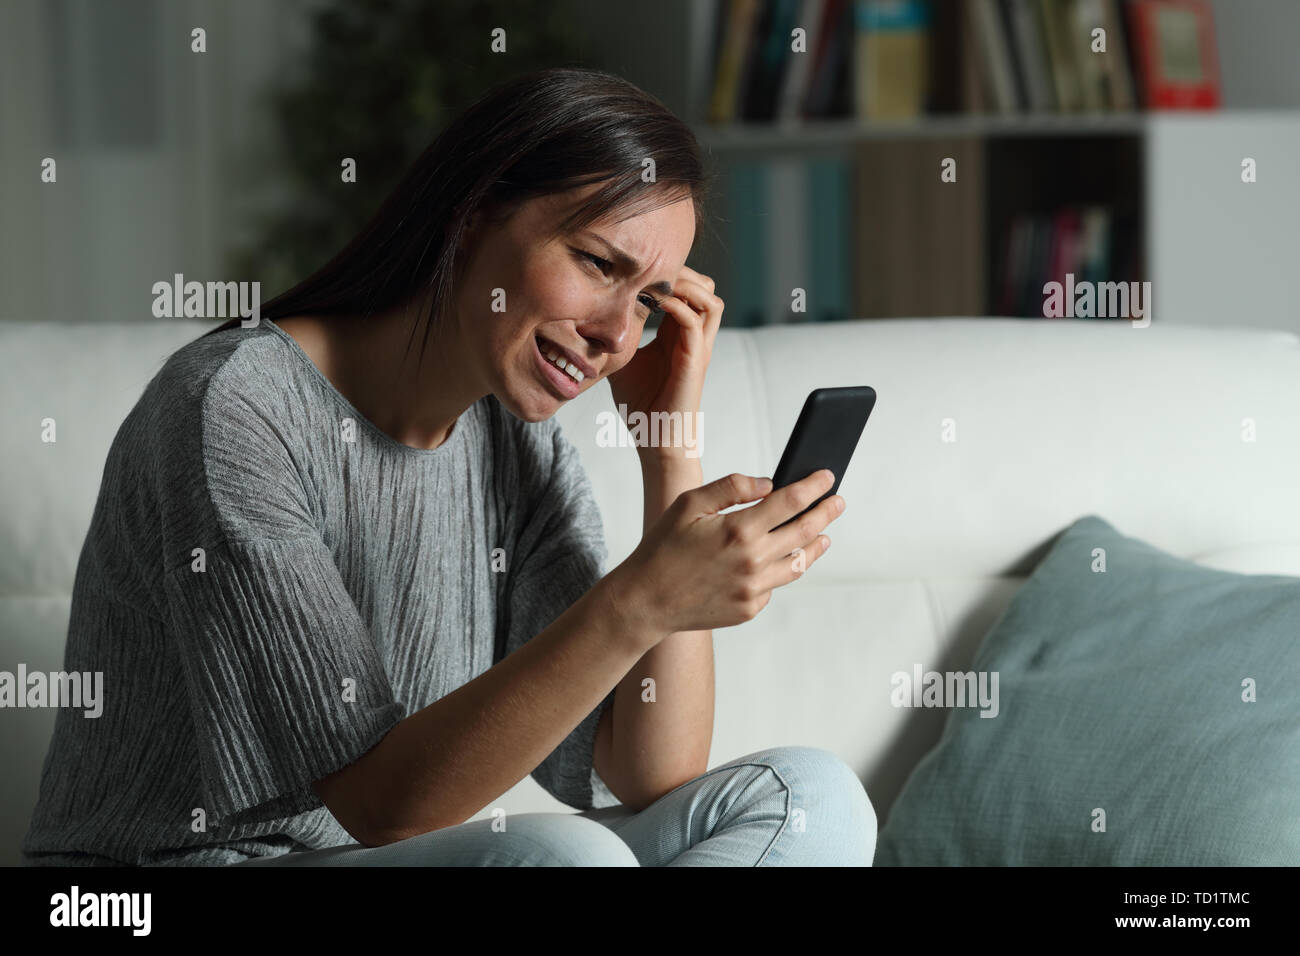 Femme triste contrôle smart phone dans la nuit, assis sur un canapé dans la salle de séjour à la maison Banque D'Images